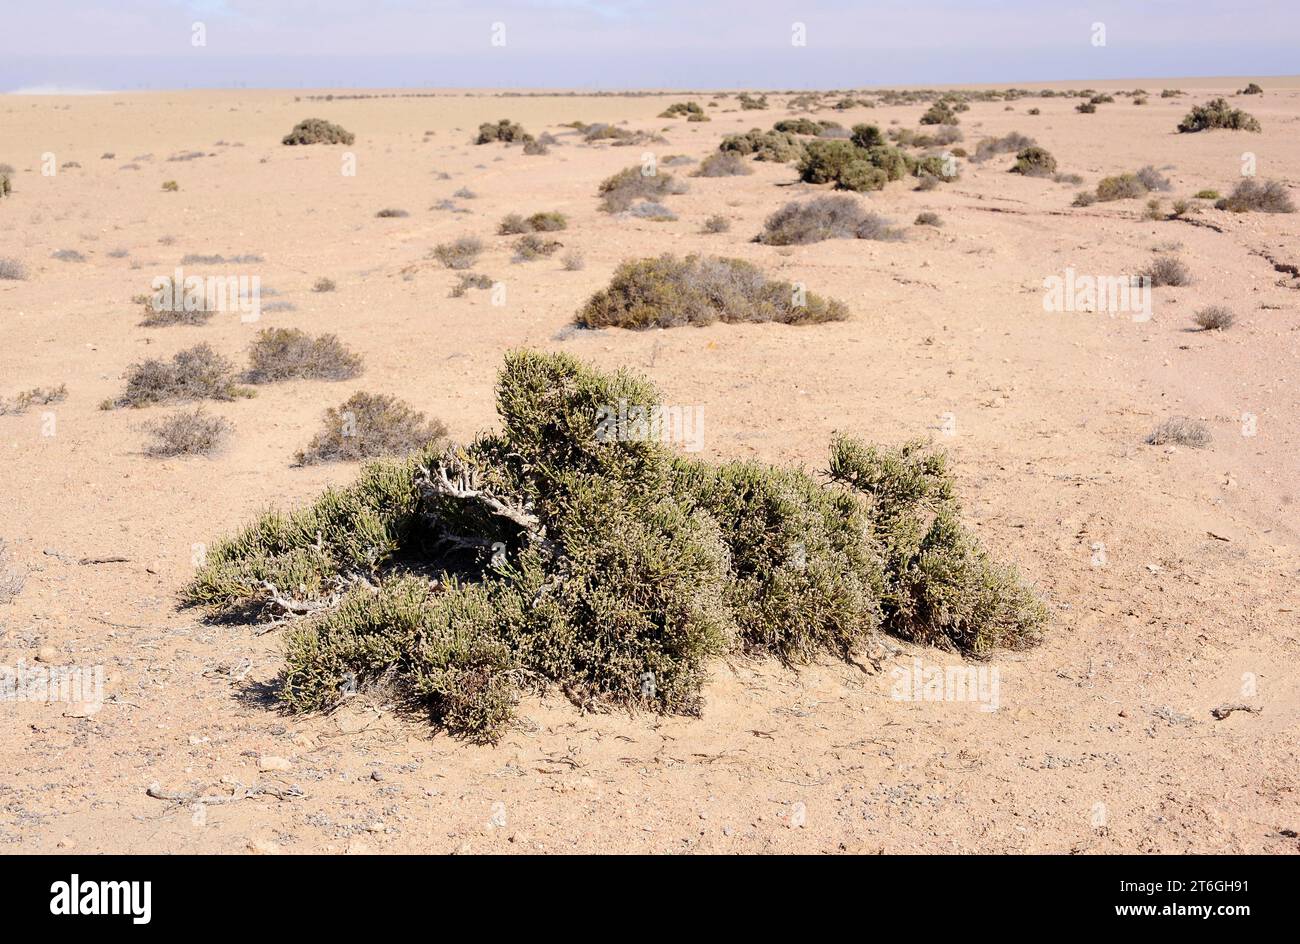 Arthraerua leubnitziae is an evergreen shrub native to Namibia. This photo was taken near Swakopmund, Namibia. Stock Photo